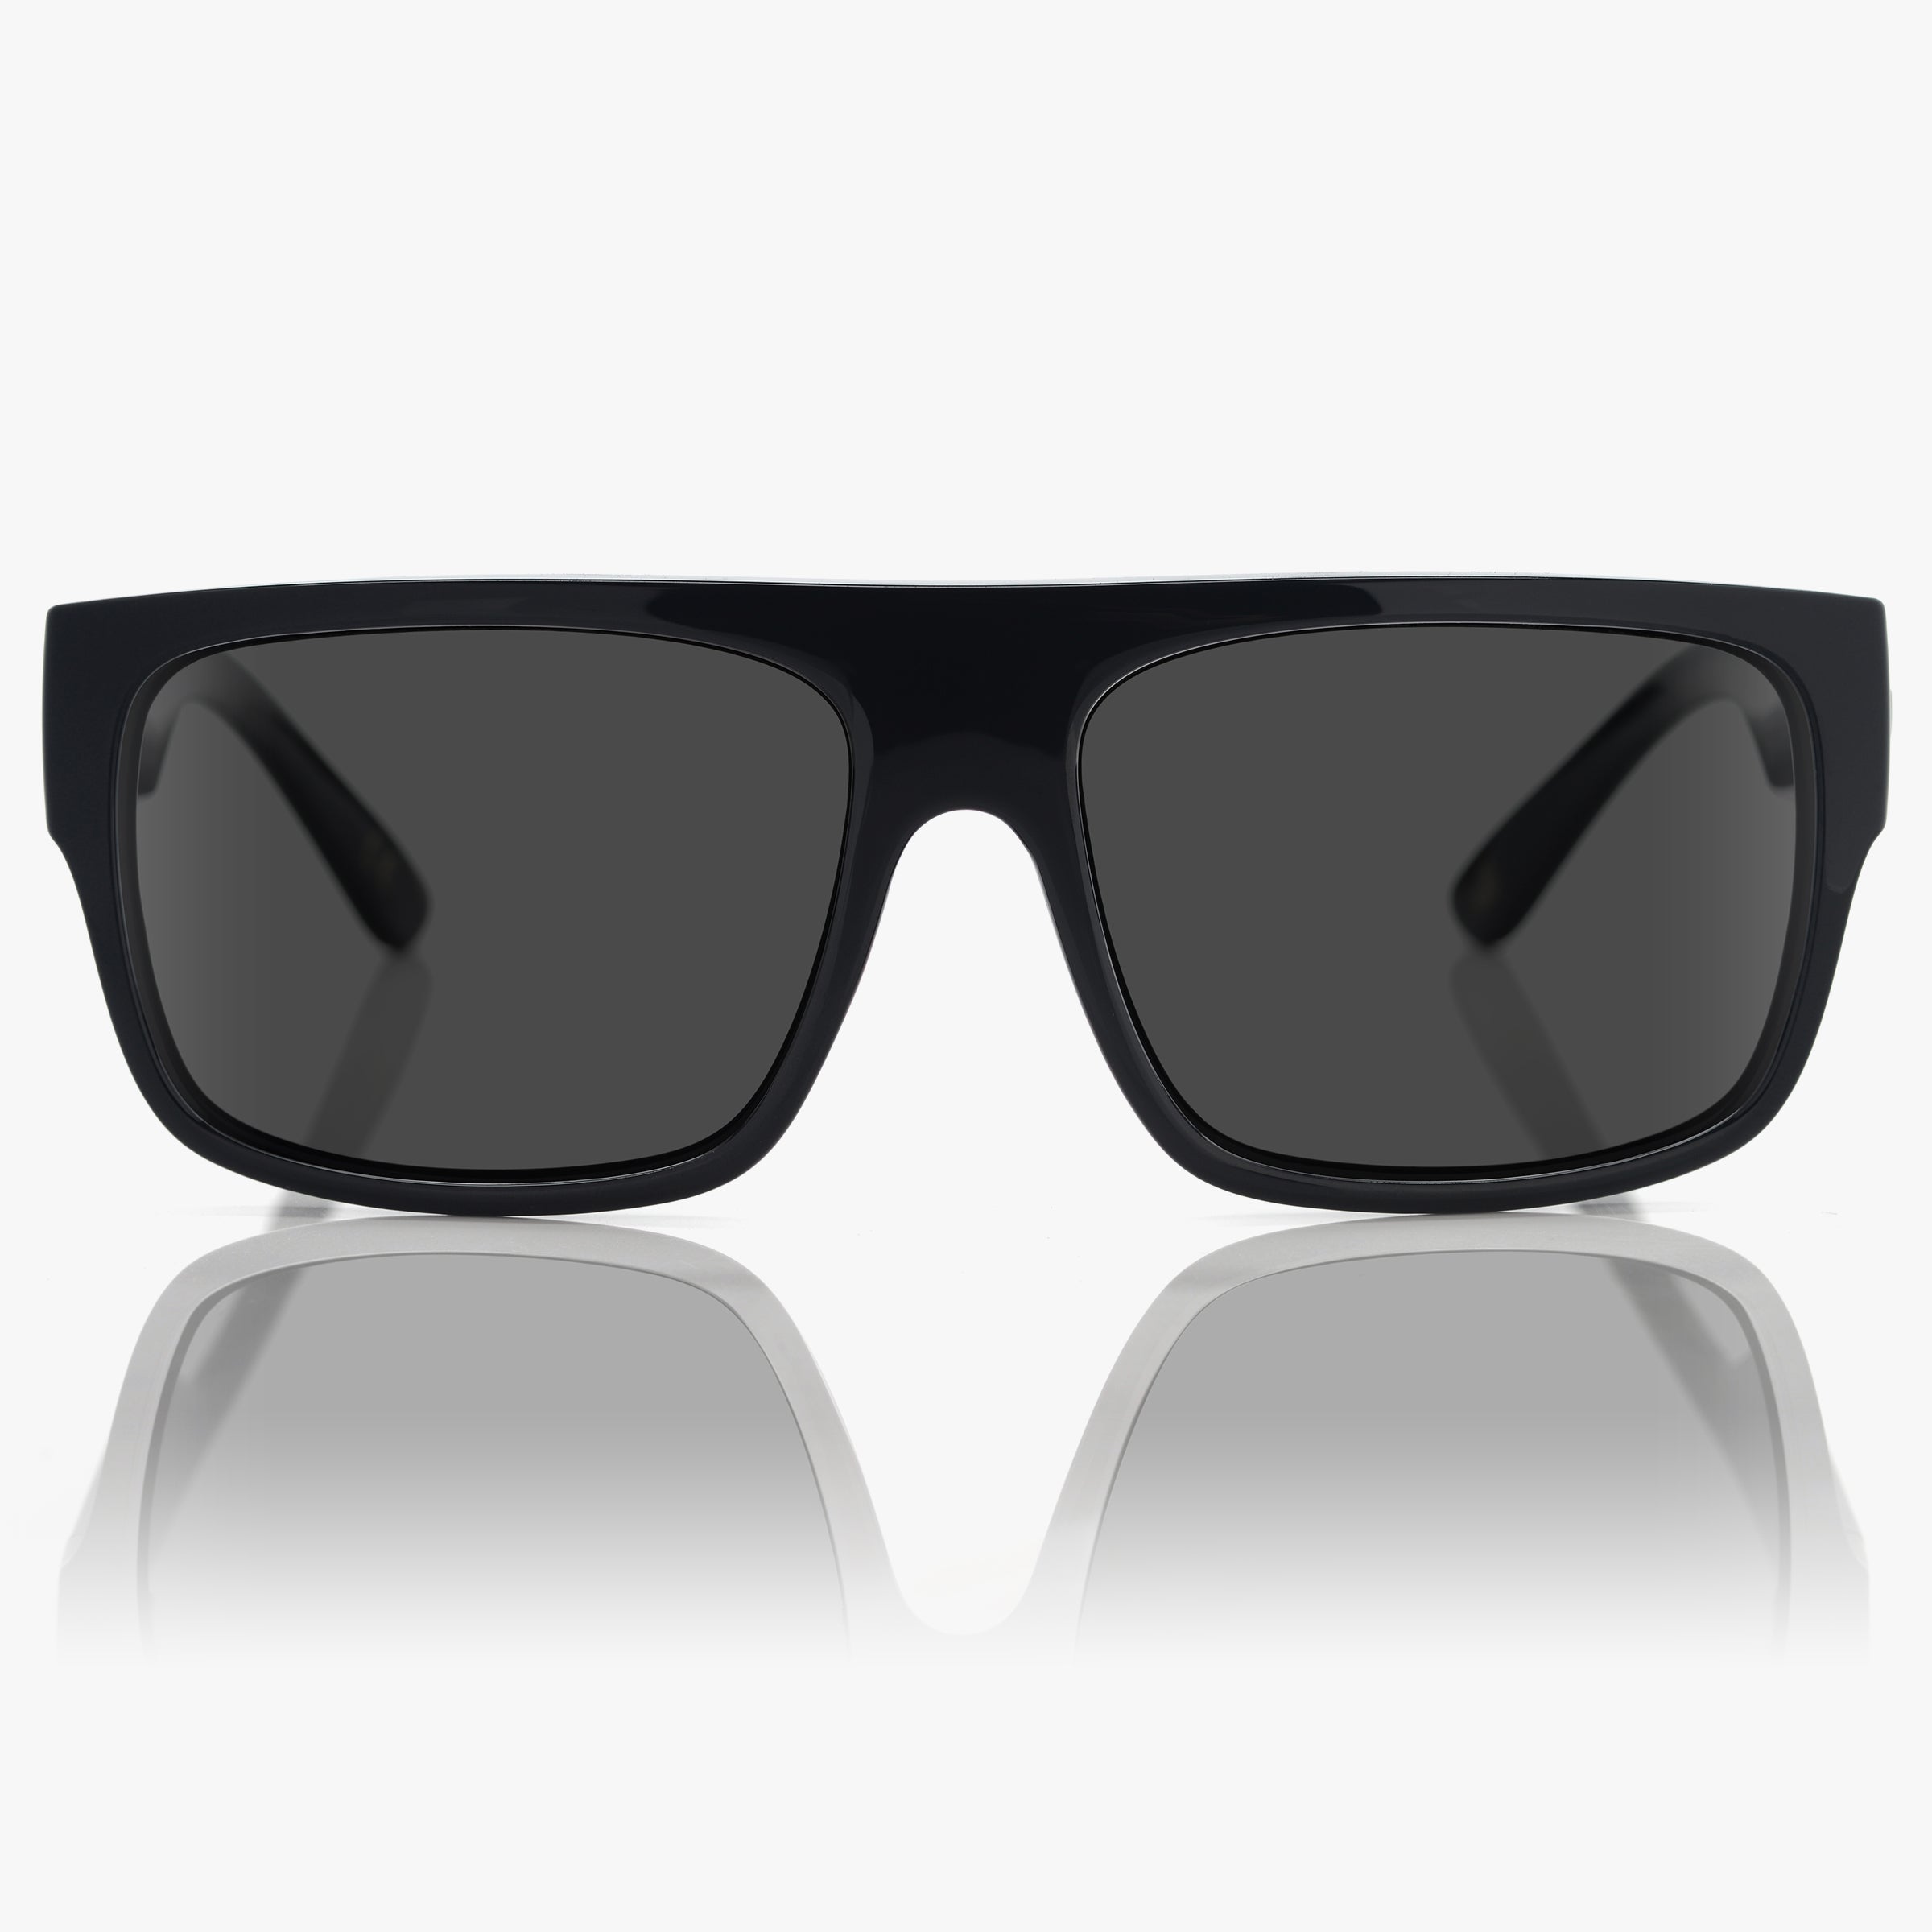 Classico Flattop Polarized Sunglasses for Men | Madson Of America ...